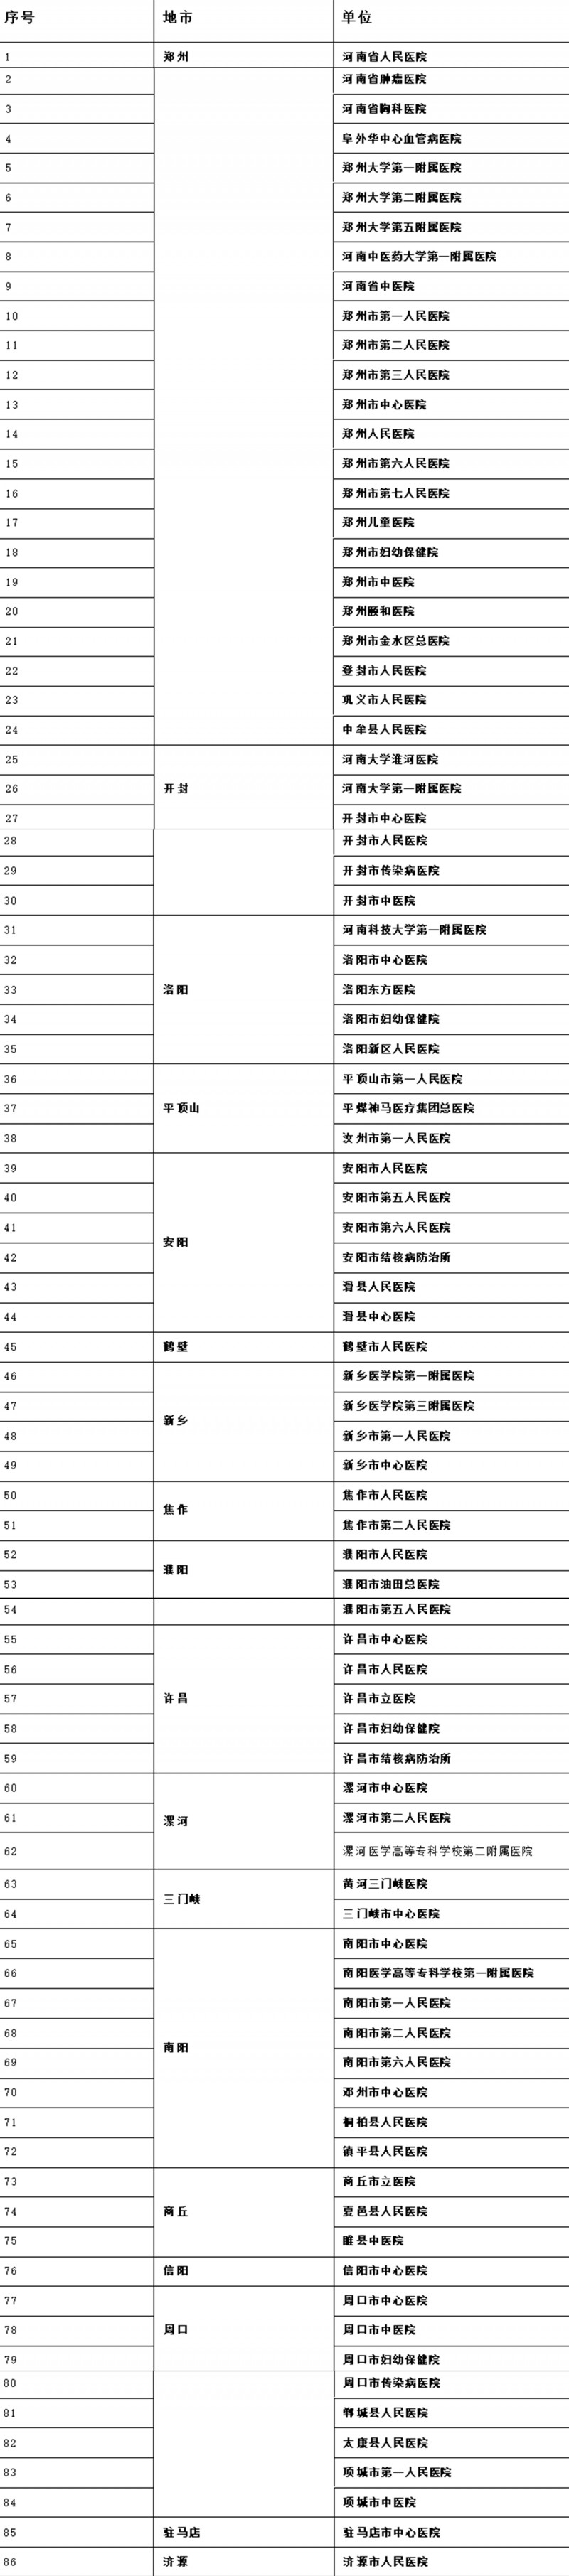 河南公布首批具备新冠病毒核酸检测能力医疗机构 郑州人民医院在榜